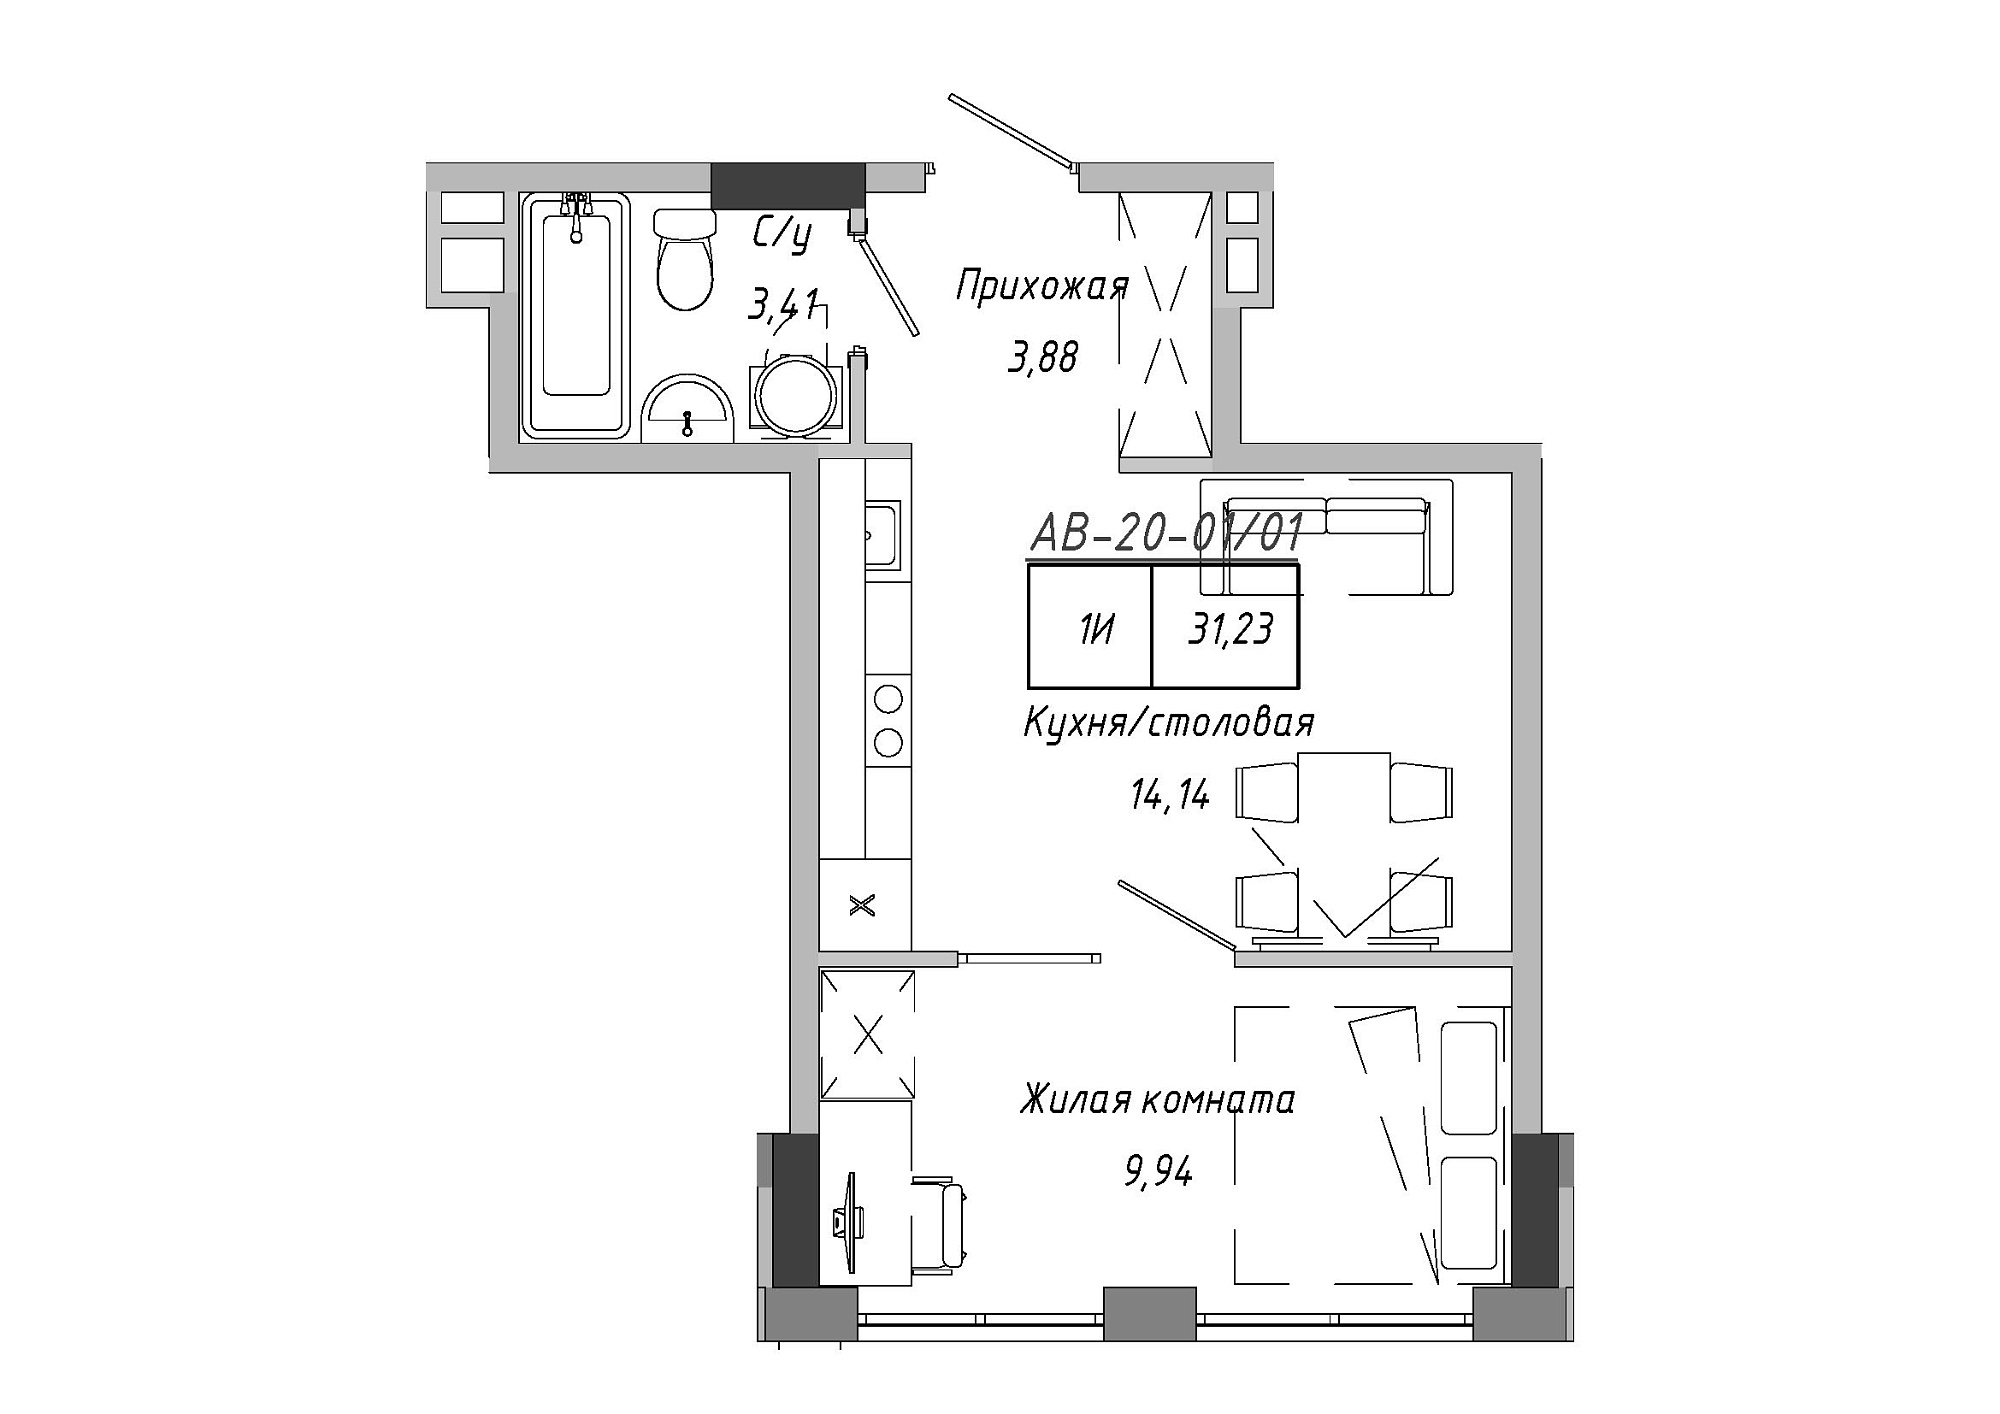 Планування 1-к квартира площею 31.23м2, AB-20-01/00001.